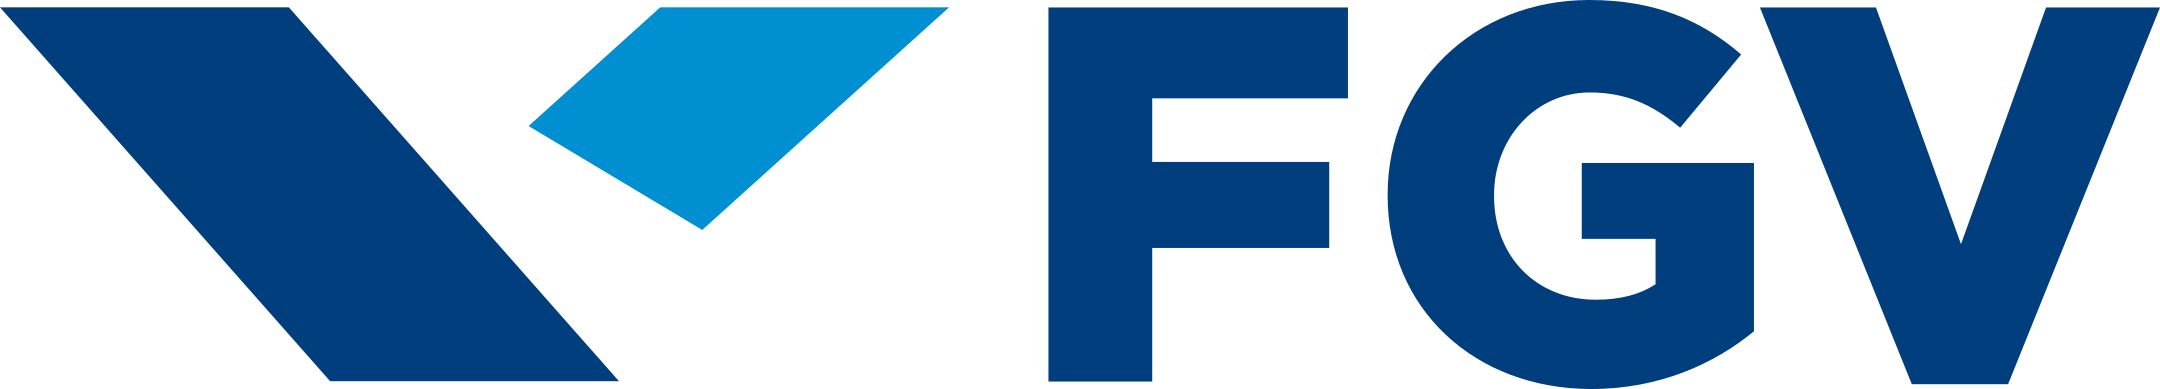 fgv logo 1 1 - FGV Logo - Fundação Getúlio Vargas Logo